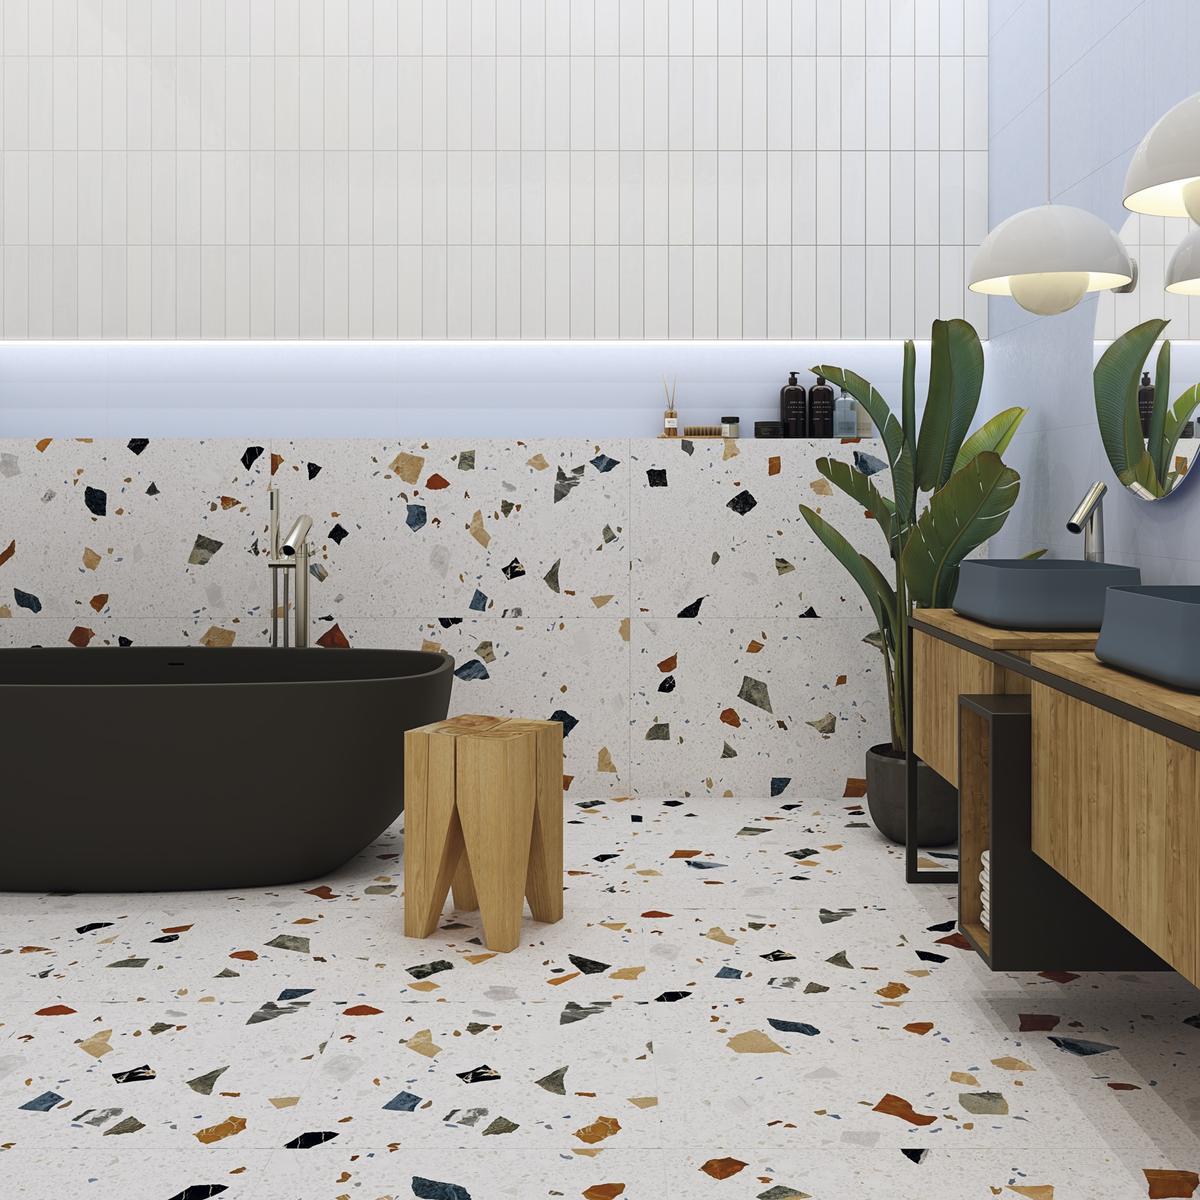 Carrelage Terrazzo multicouleur avec éclats variés sur 80x80 cm dans salle de bain moderne avec tons bois et noir, plantes vertes